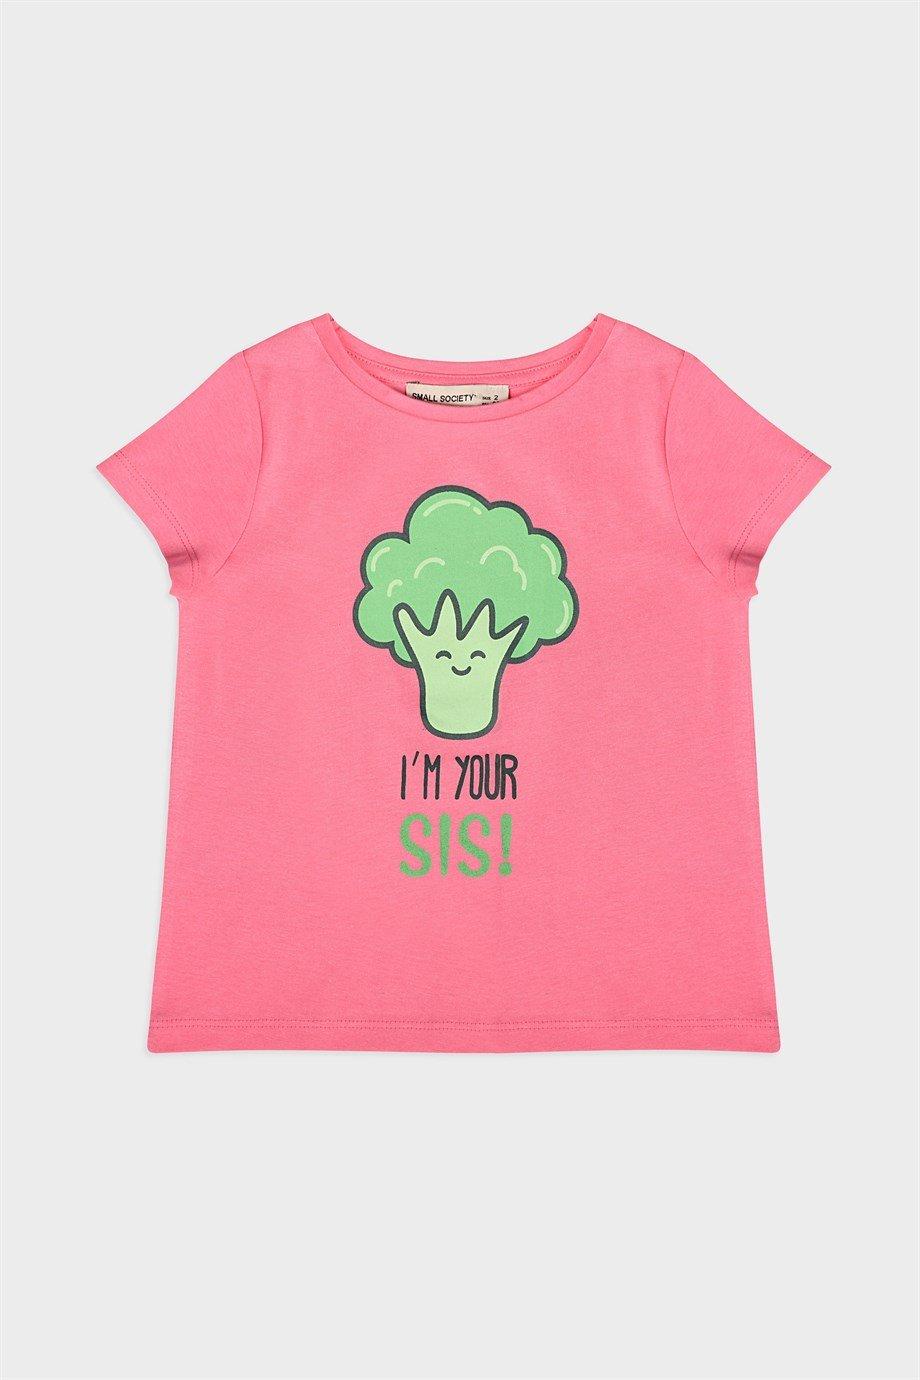 Small Society Roze T-shirt met broccoliprint voor meisjes